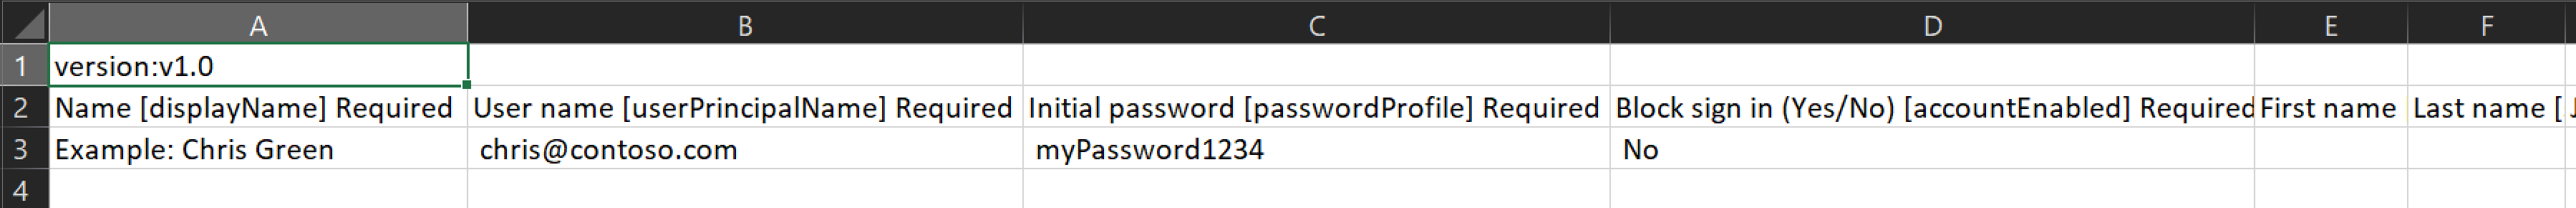 顯示 CSV 檔案範例的螢幕快照，其中包含要建立之使用者的名稱和標識碼。